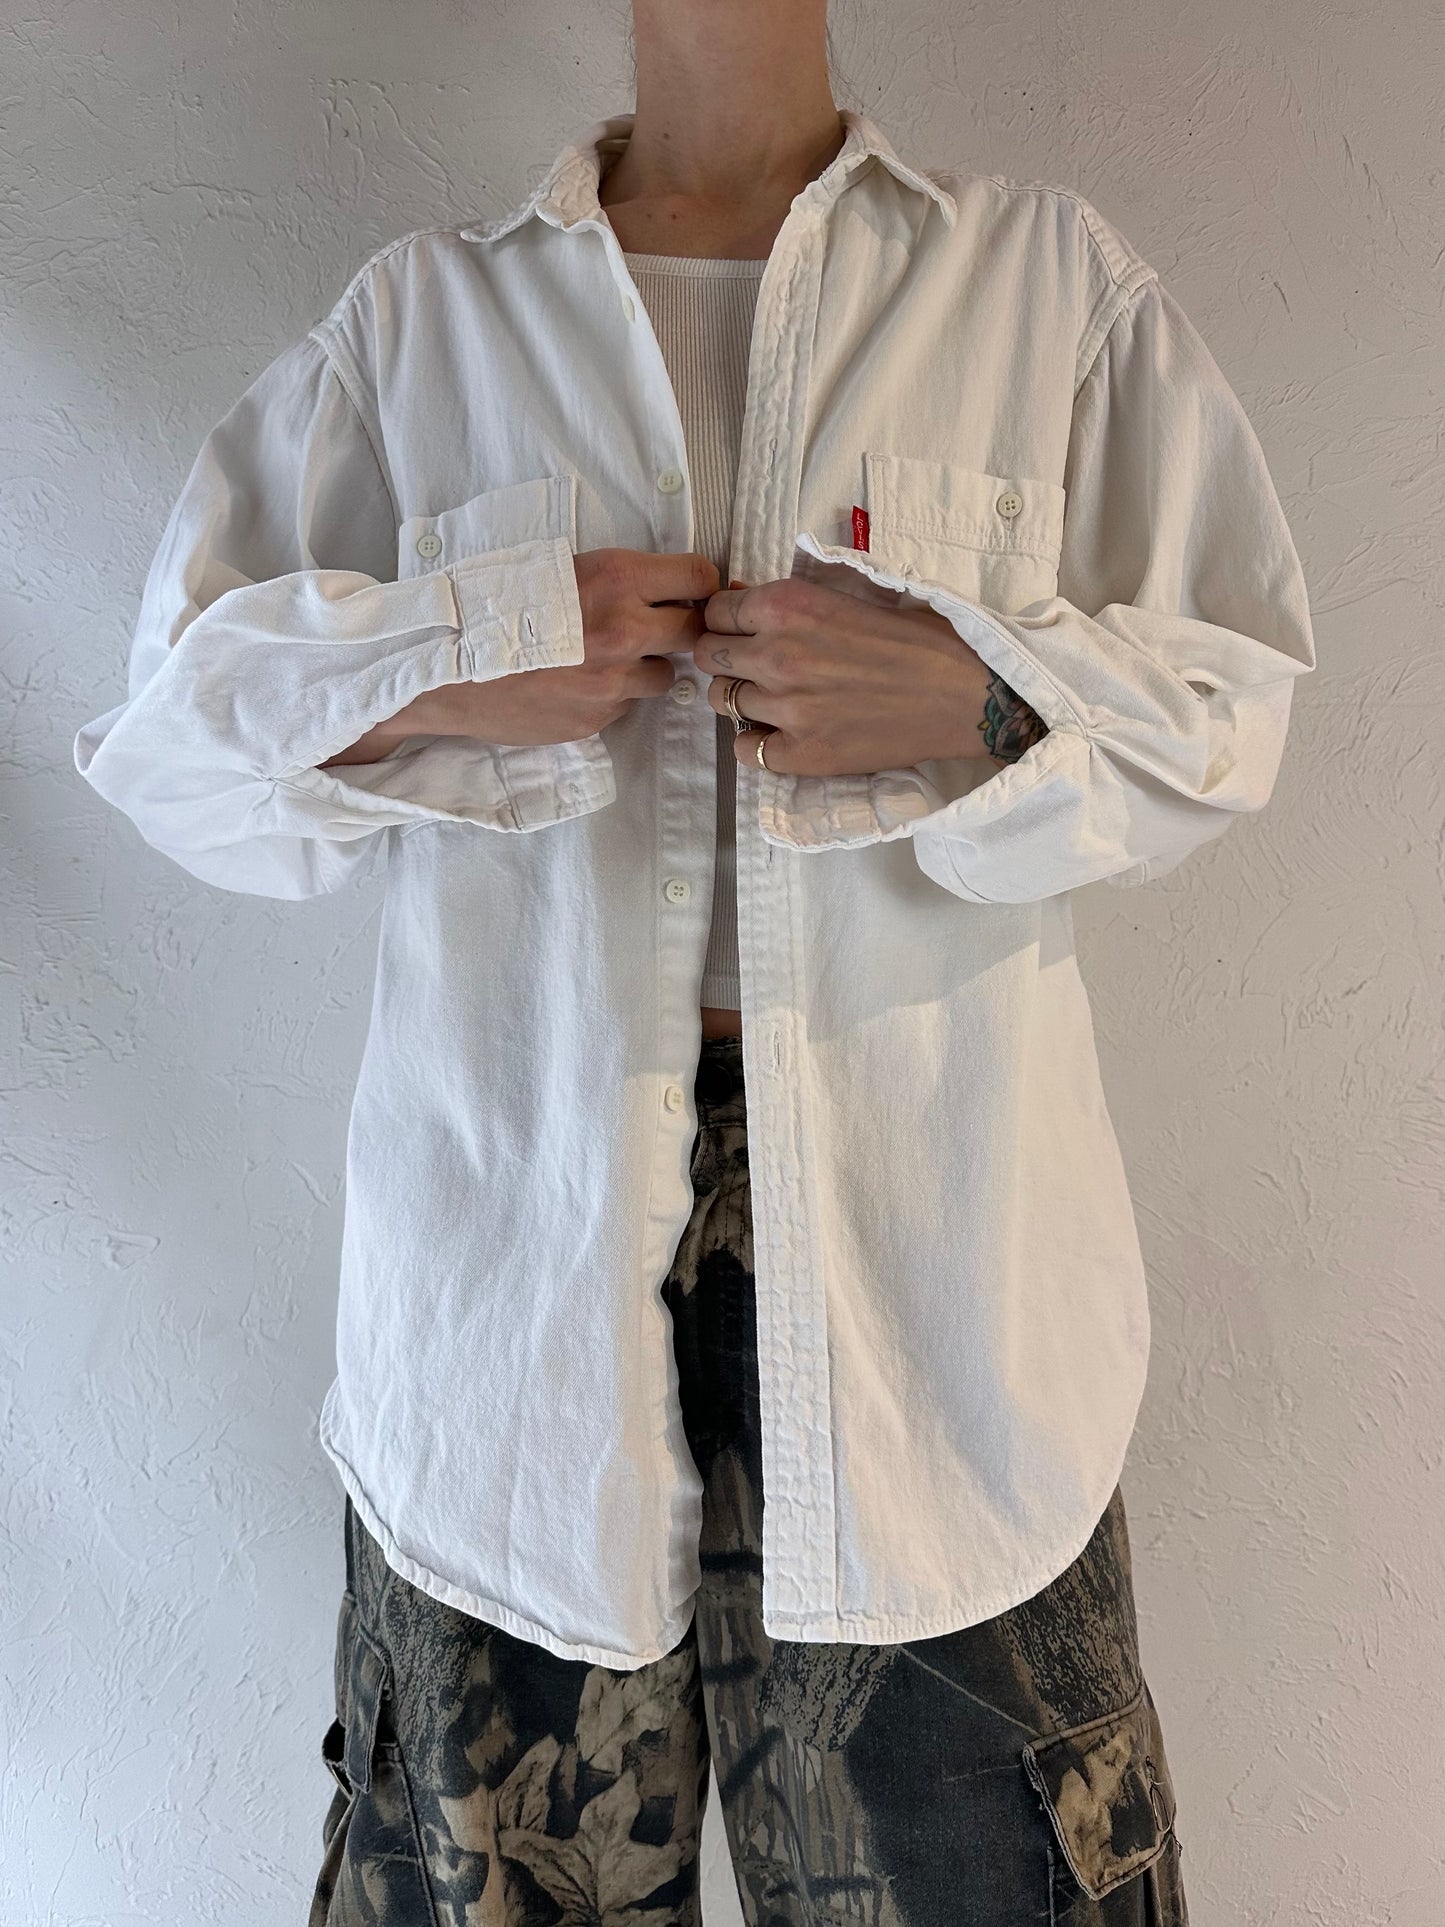 90s 'Levis' White Denim Button Up Shirt / Medium